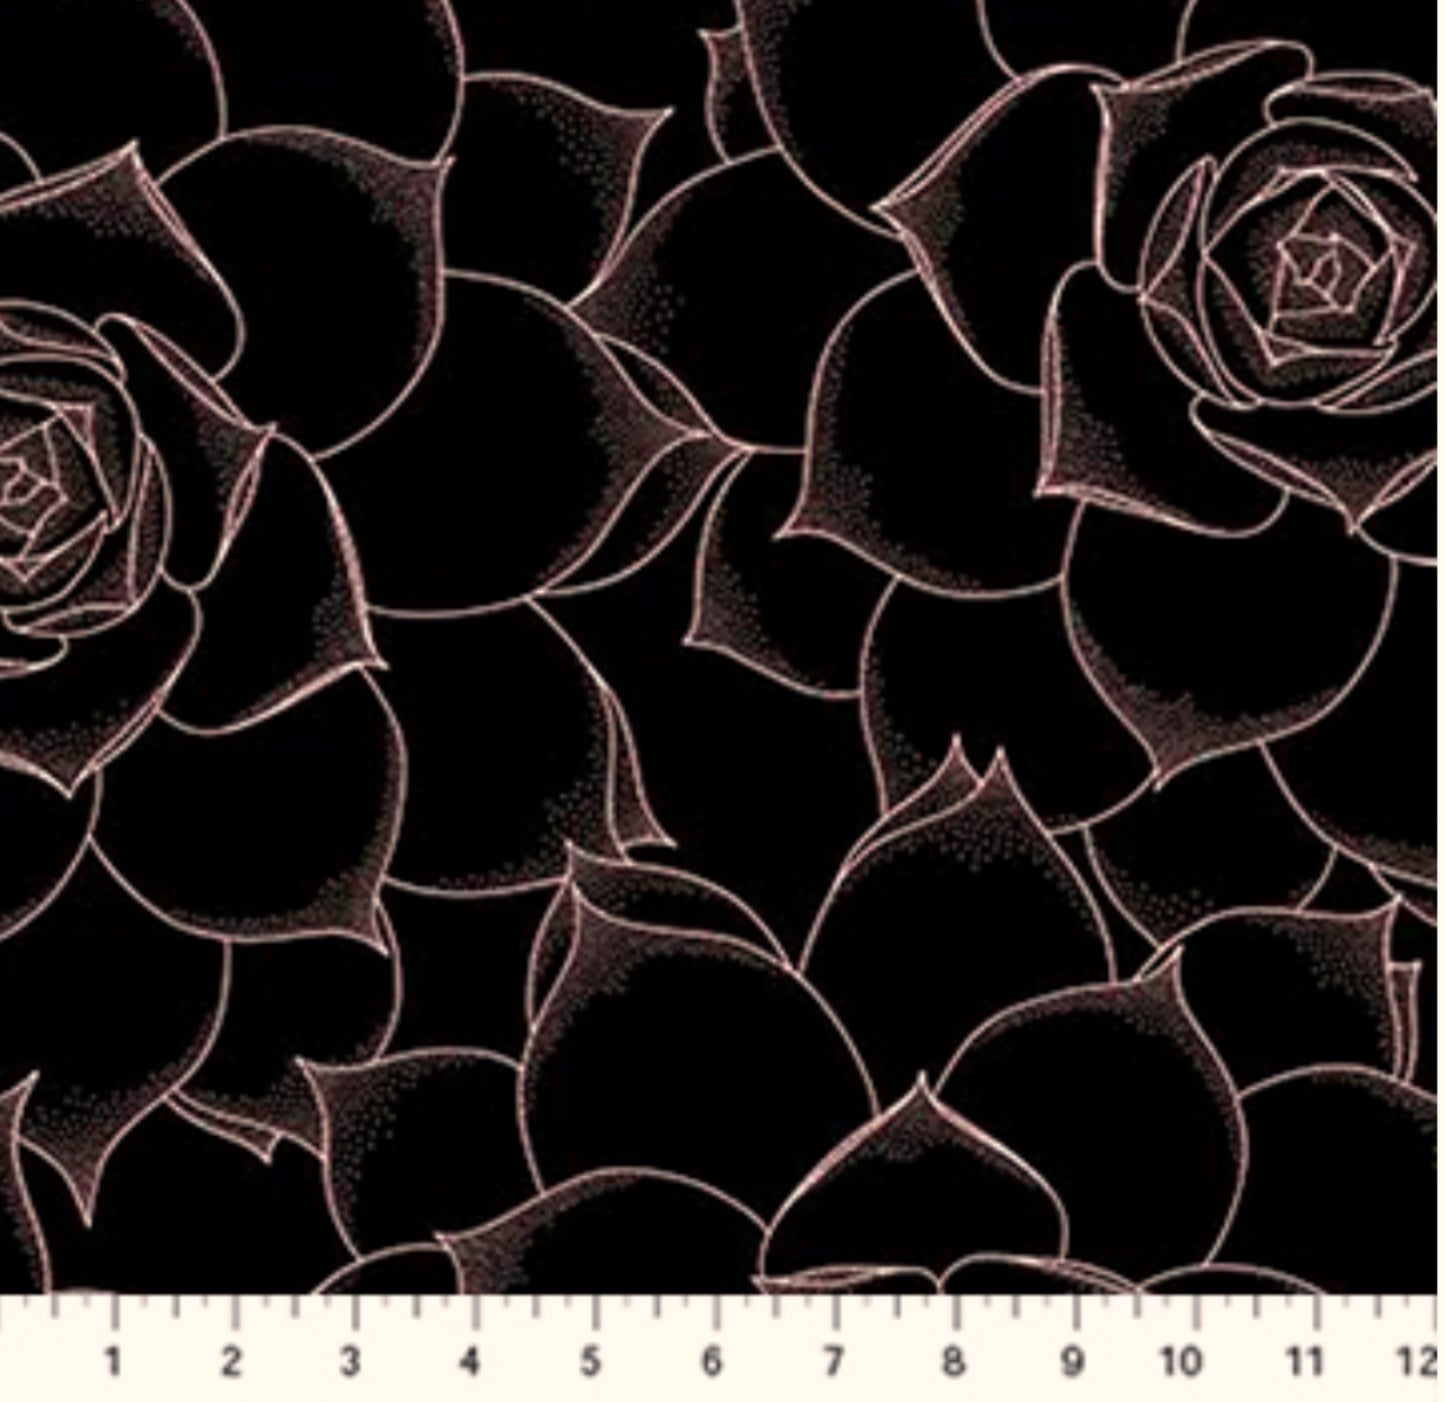 Rose Succulent - The Botanist Collection - Figo Fabrics